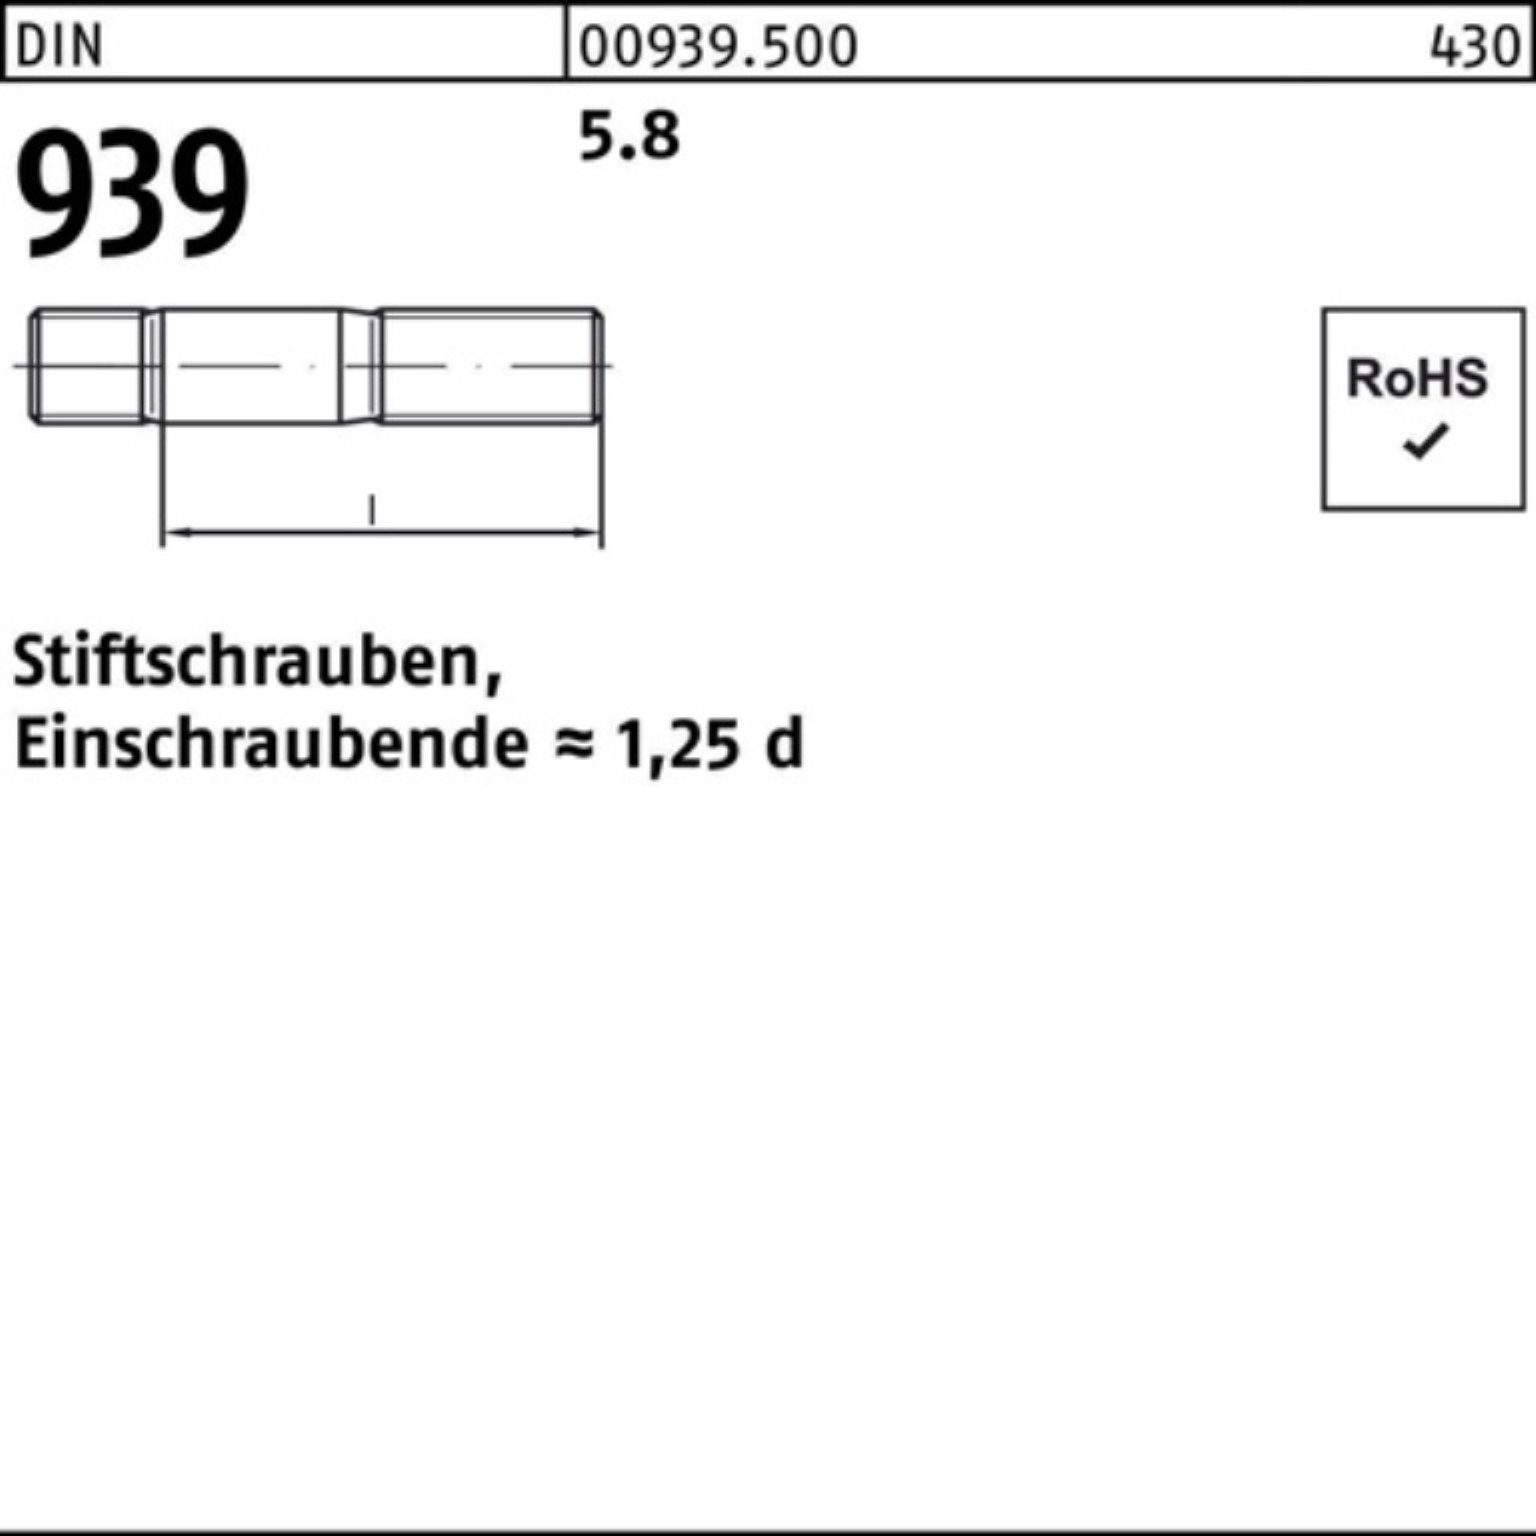 80 Pack Einschraubende=1,25d Reyher S 100 Stiftschraube DIN 939 100er Stiftschraube 5.8 M6x